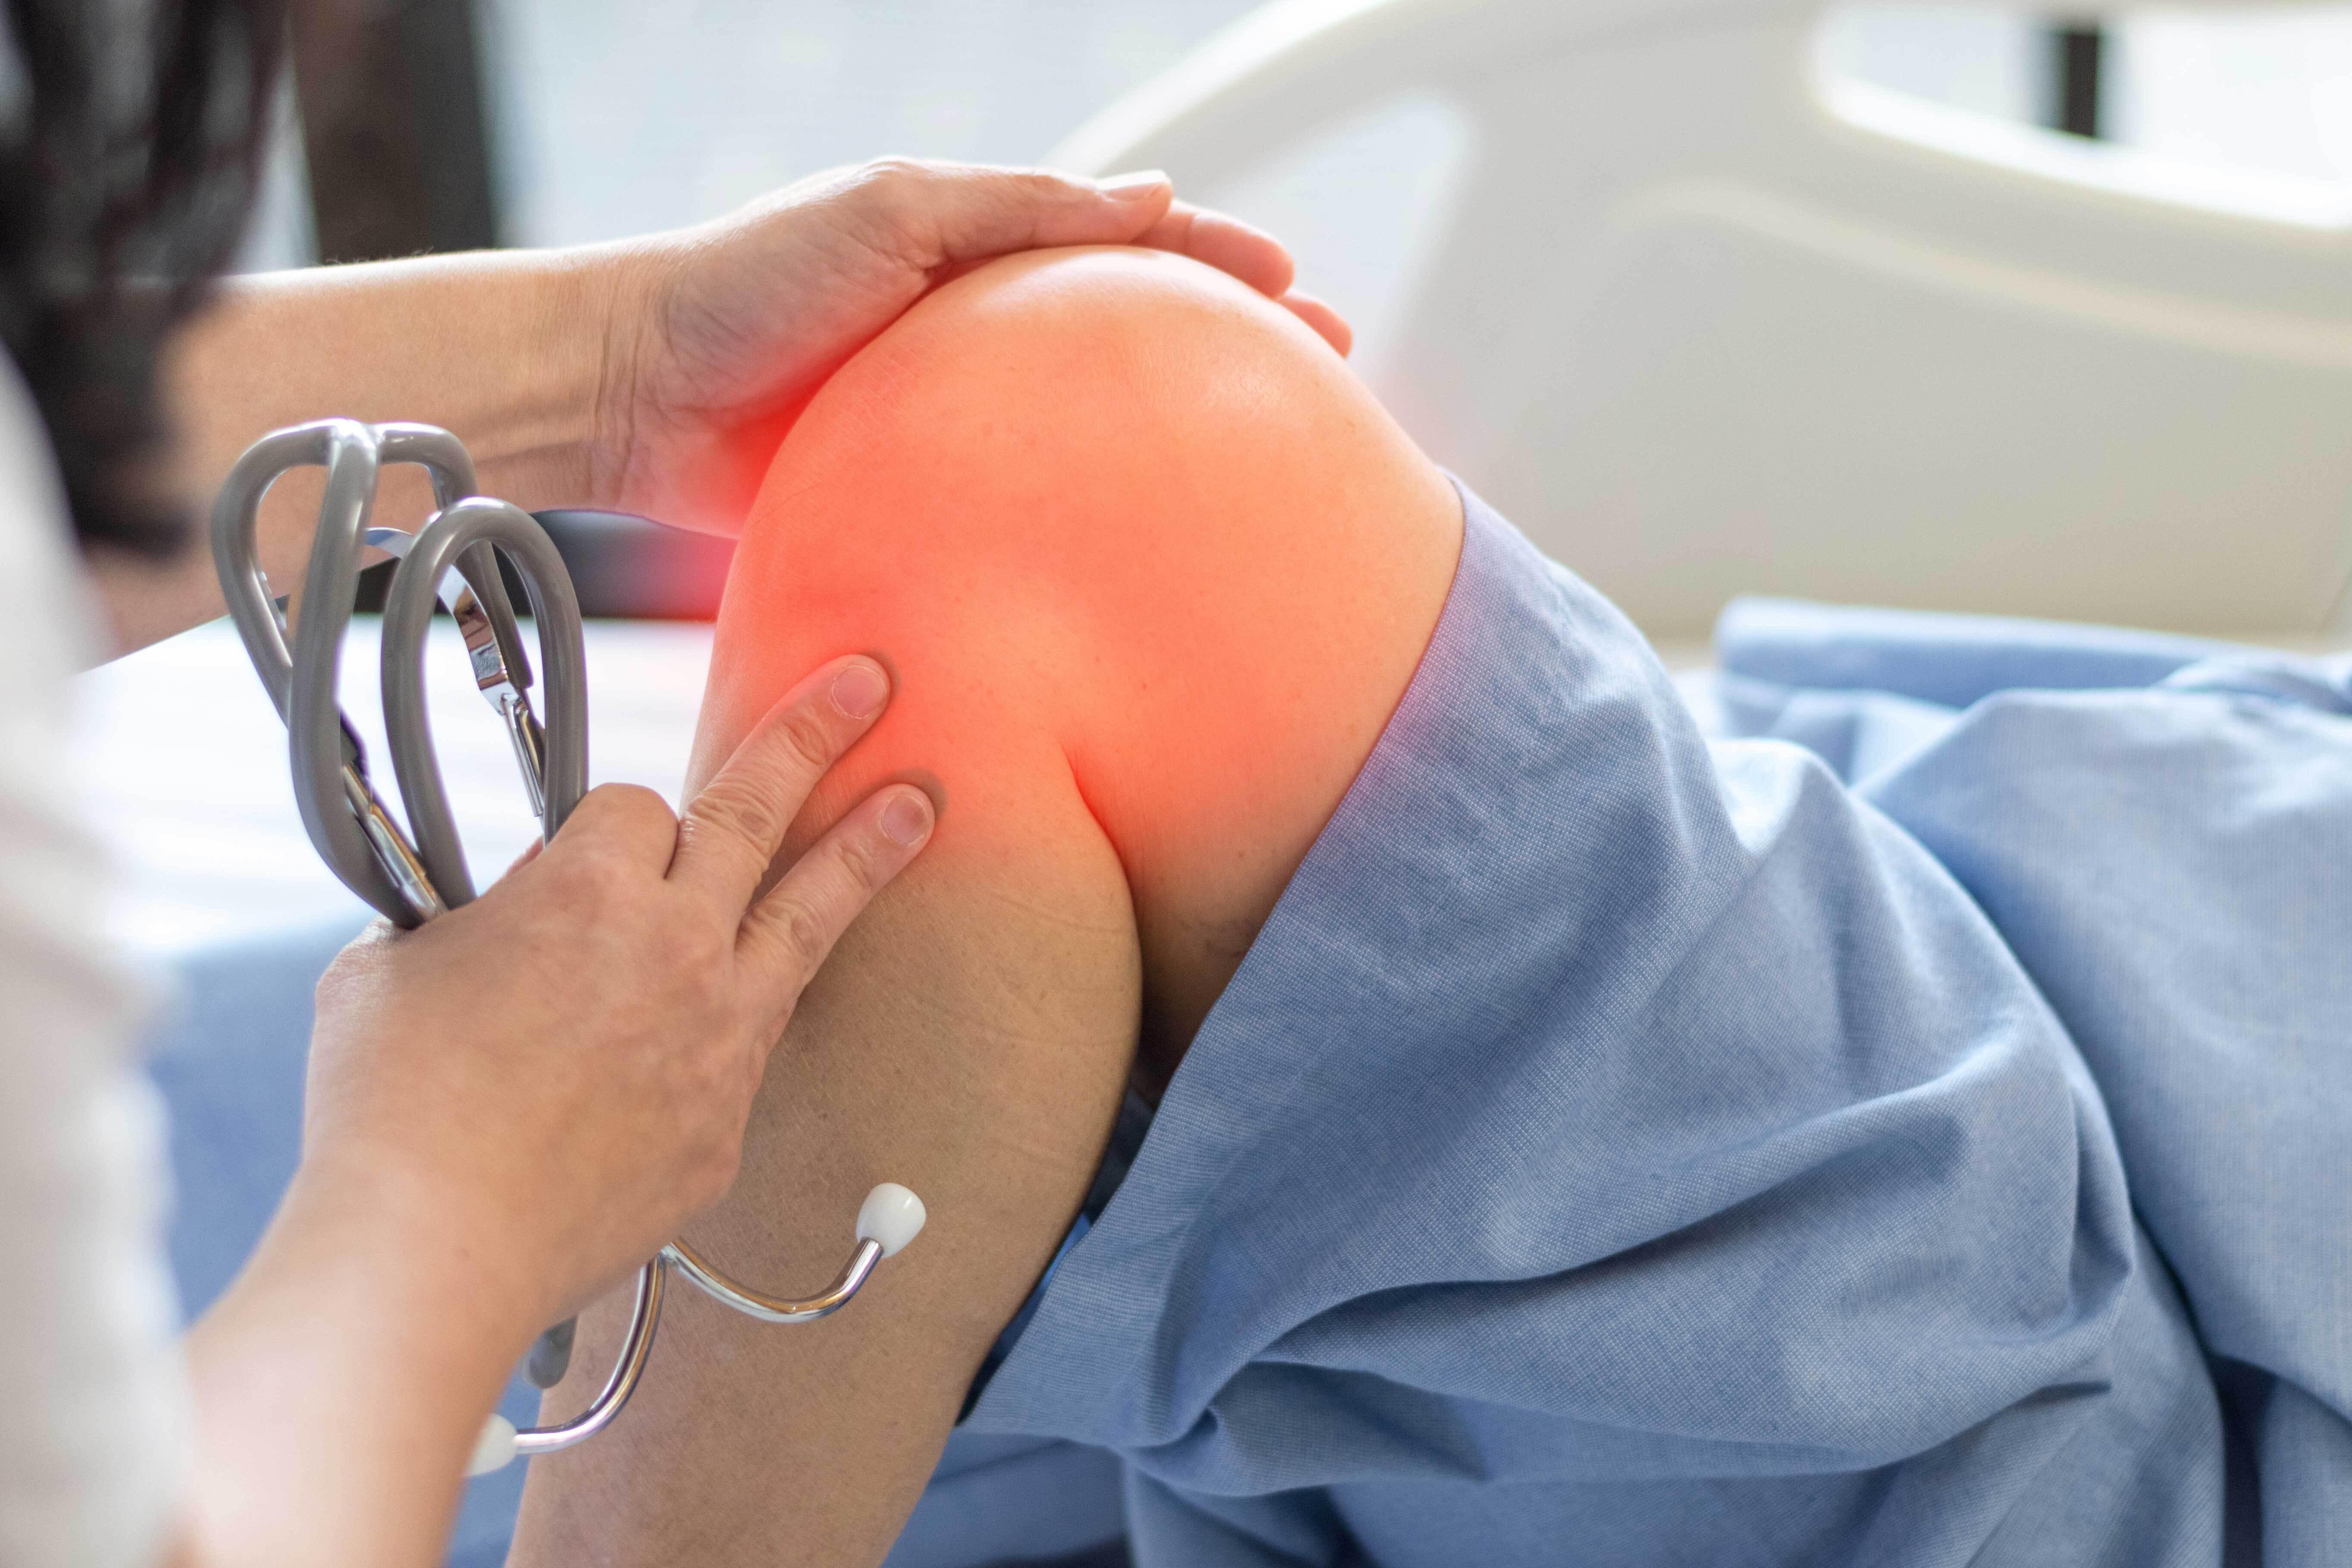 L’arthroscopie, une intervention pour observer et soigner le genou